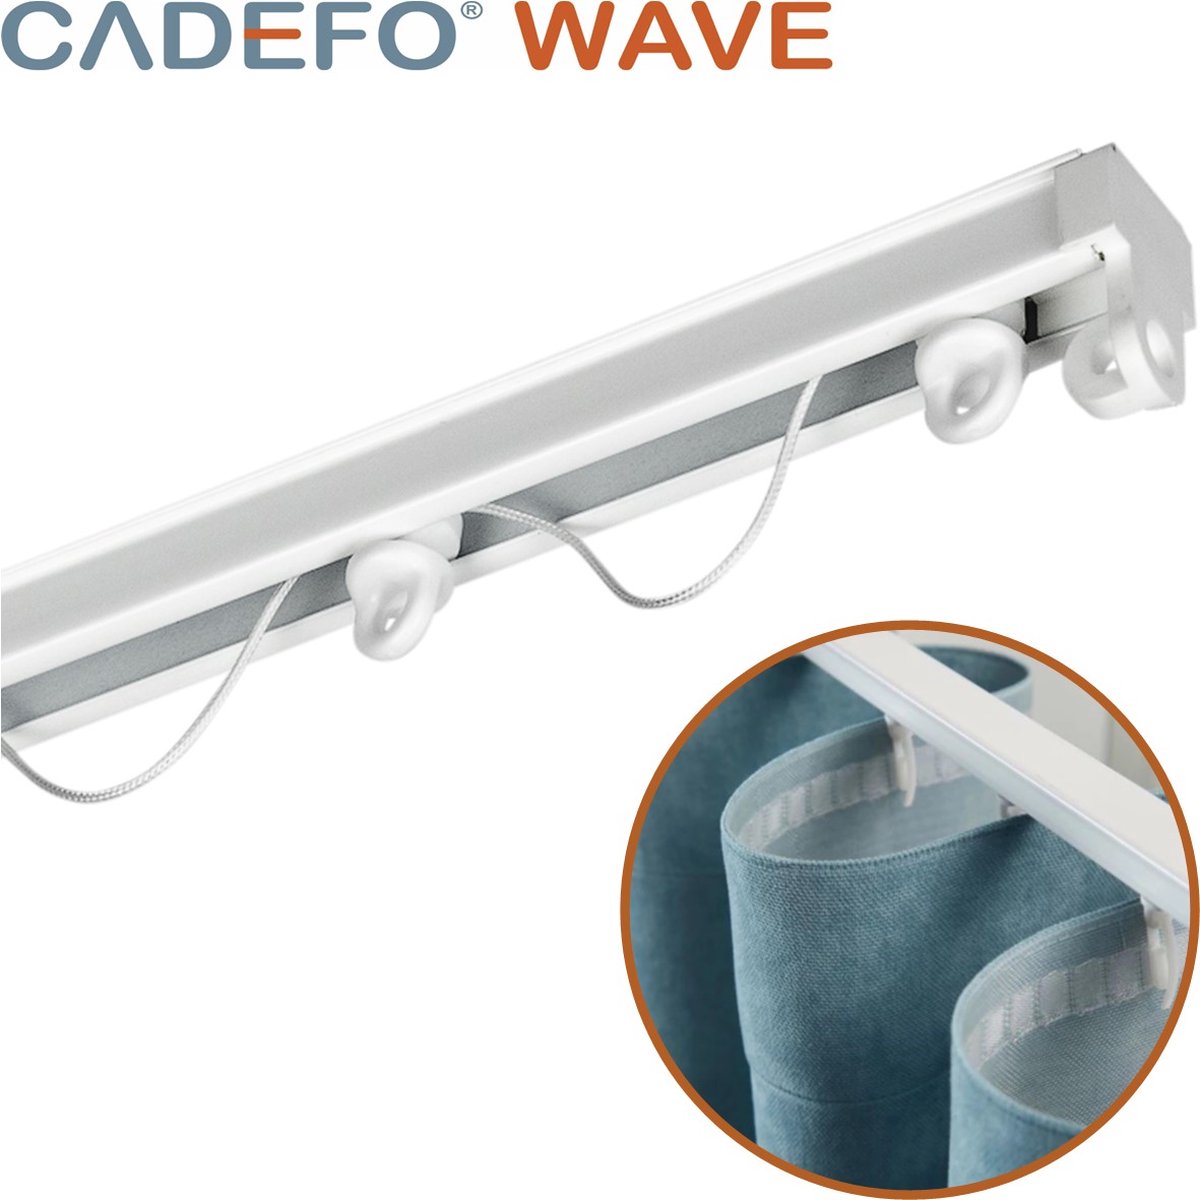 CADEFO WAVE (451 - 500 cm) Gordijnrails - Compleet op maat! - UIT 1 STUK - Leverbaar tot 6 meter - Plafondbevestiging - Lengte 492 cm